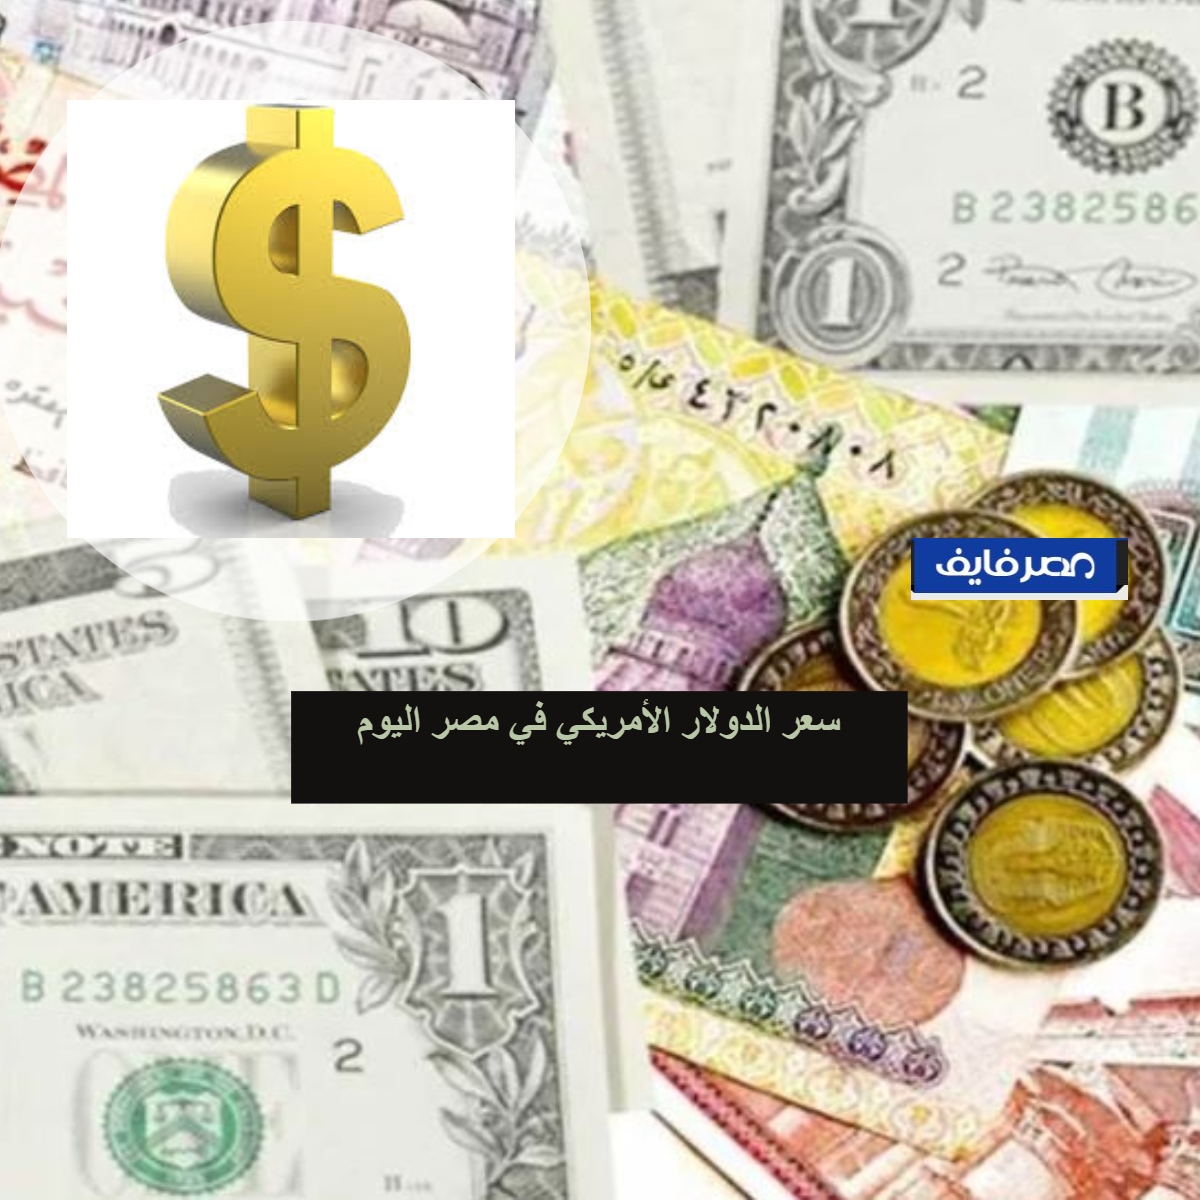 سعر الدولار الأمريكي في مصر اليوم 16-2-2020 انخفاض في بداية التعامل